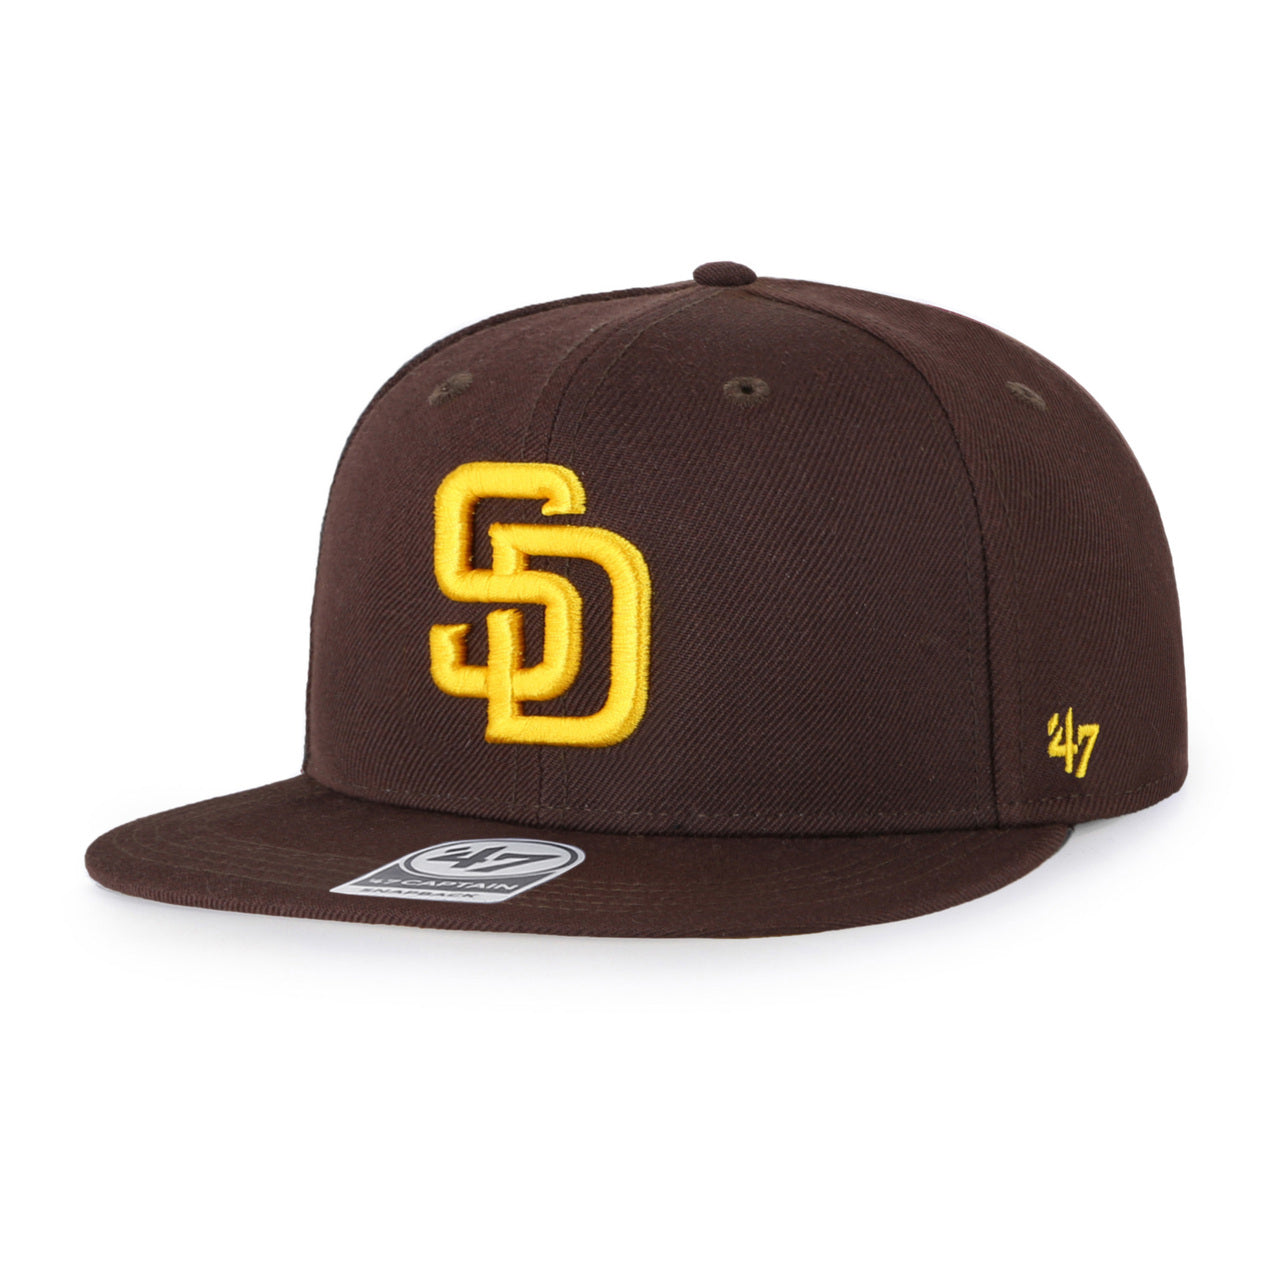 47 San Diego Padres Clean Up Hat Adjustable Brown